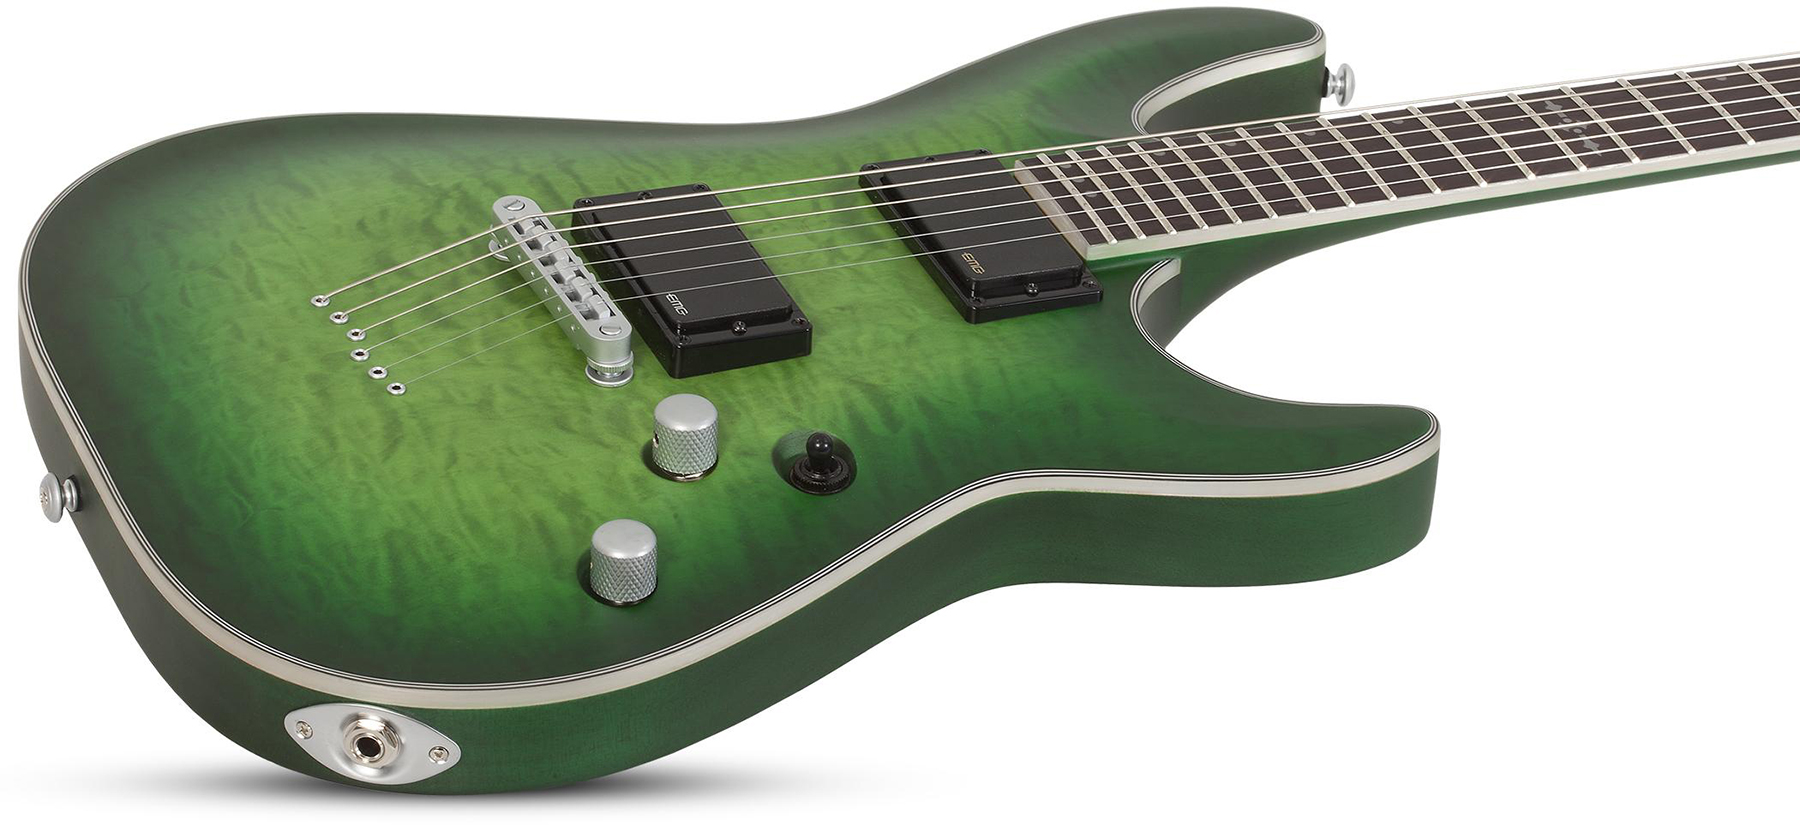 Schecter C-1 Platinum 2h Emg Ht Eb - Satin Green Burst - Str shape electric guitar - Variation 1